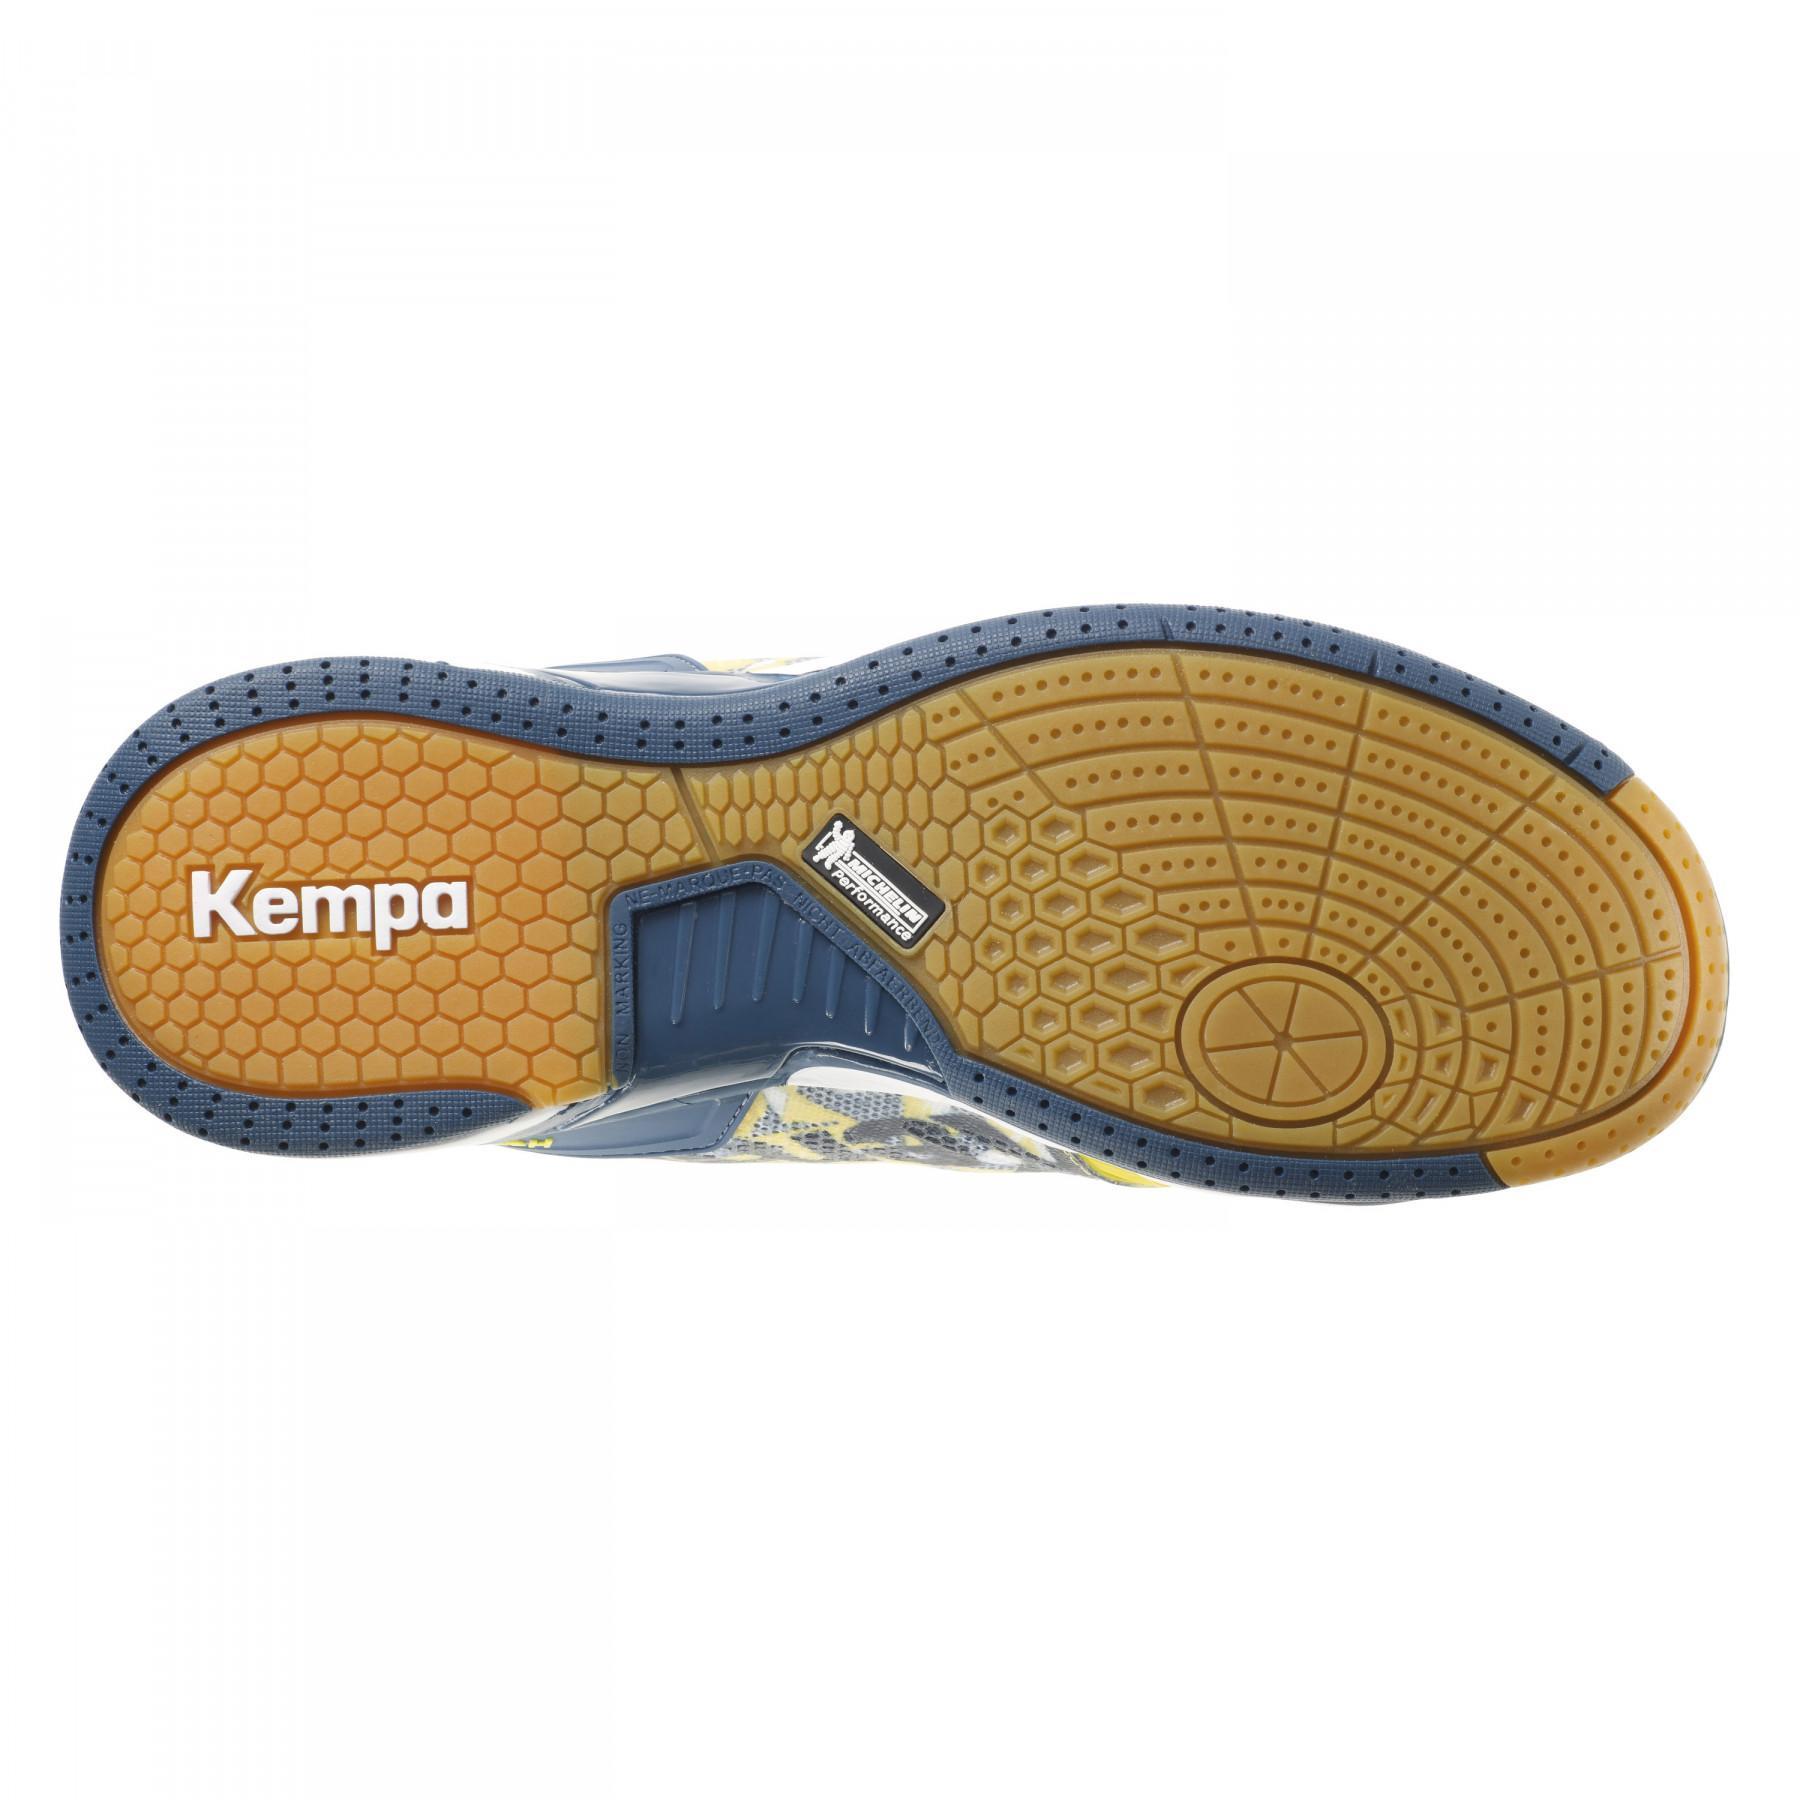 Sapatos Kempa Attack One